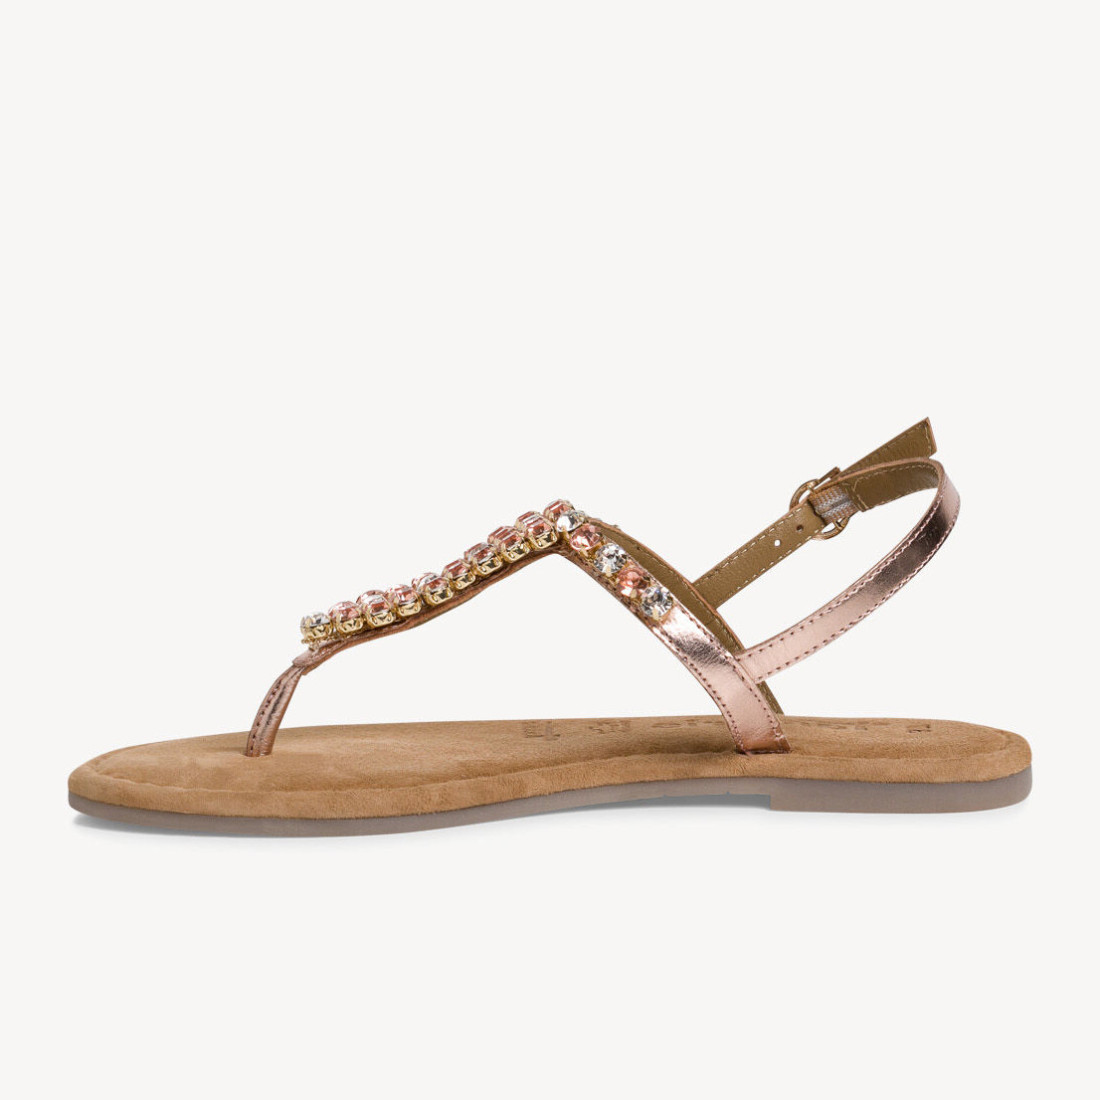 Tamaris thong sandal with pink